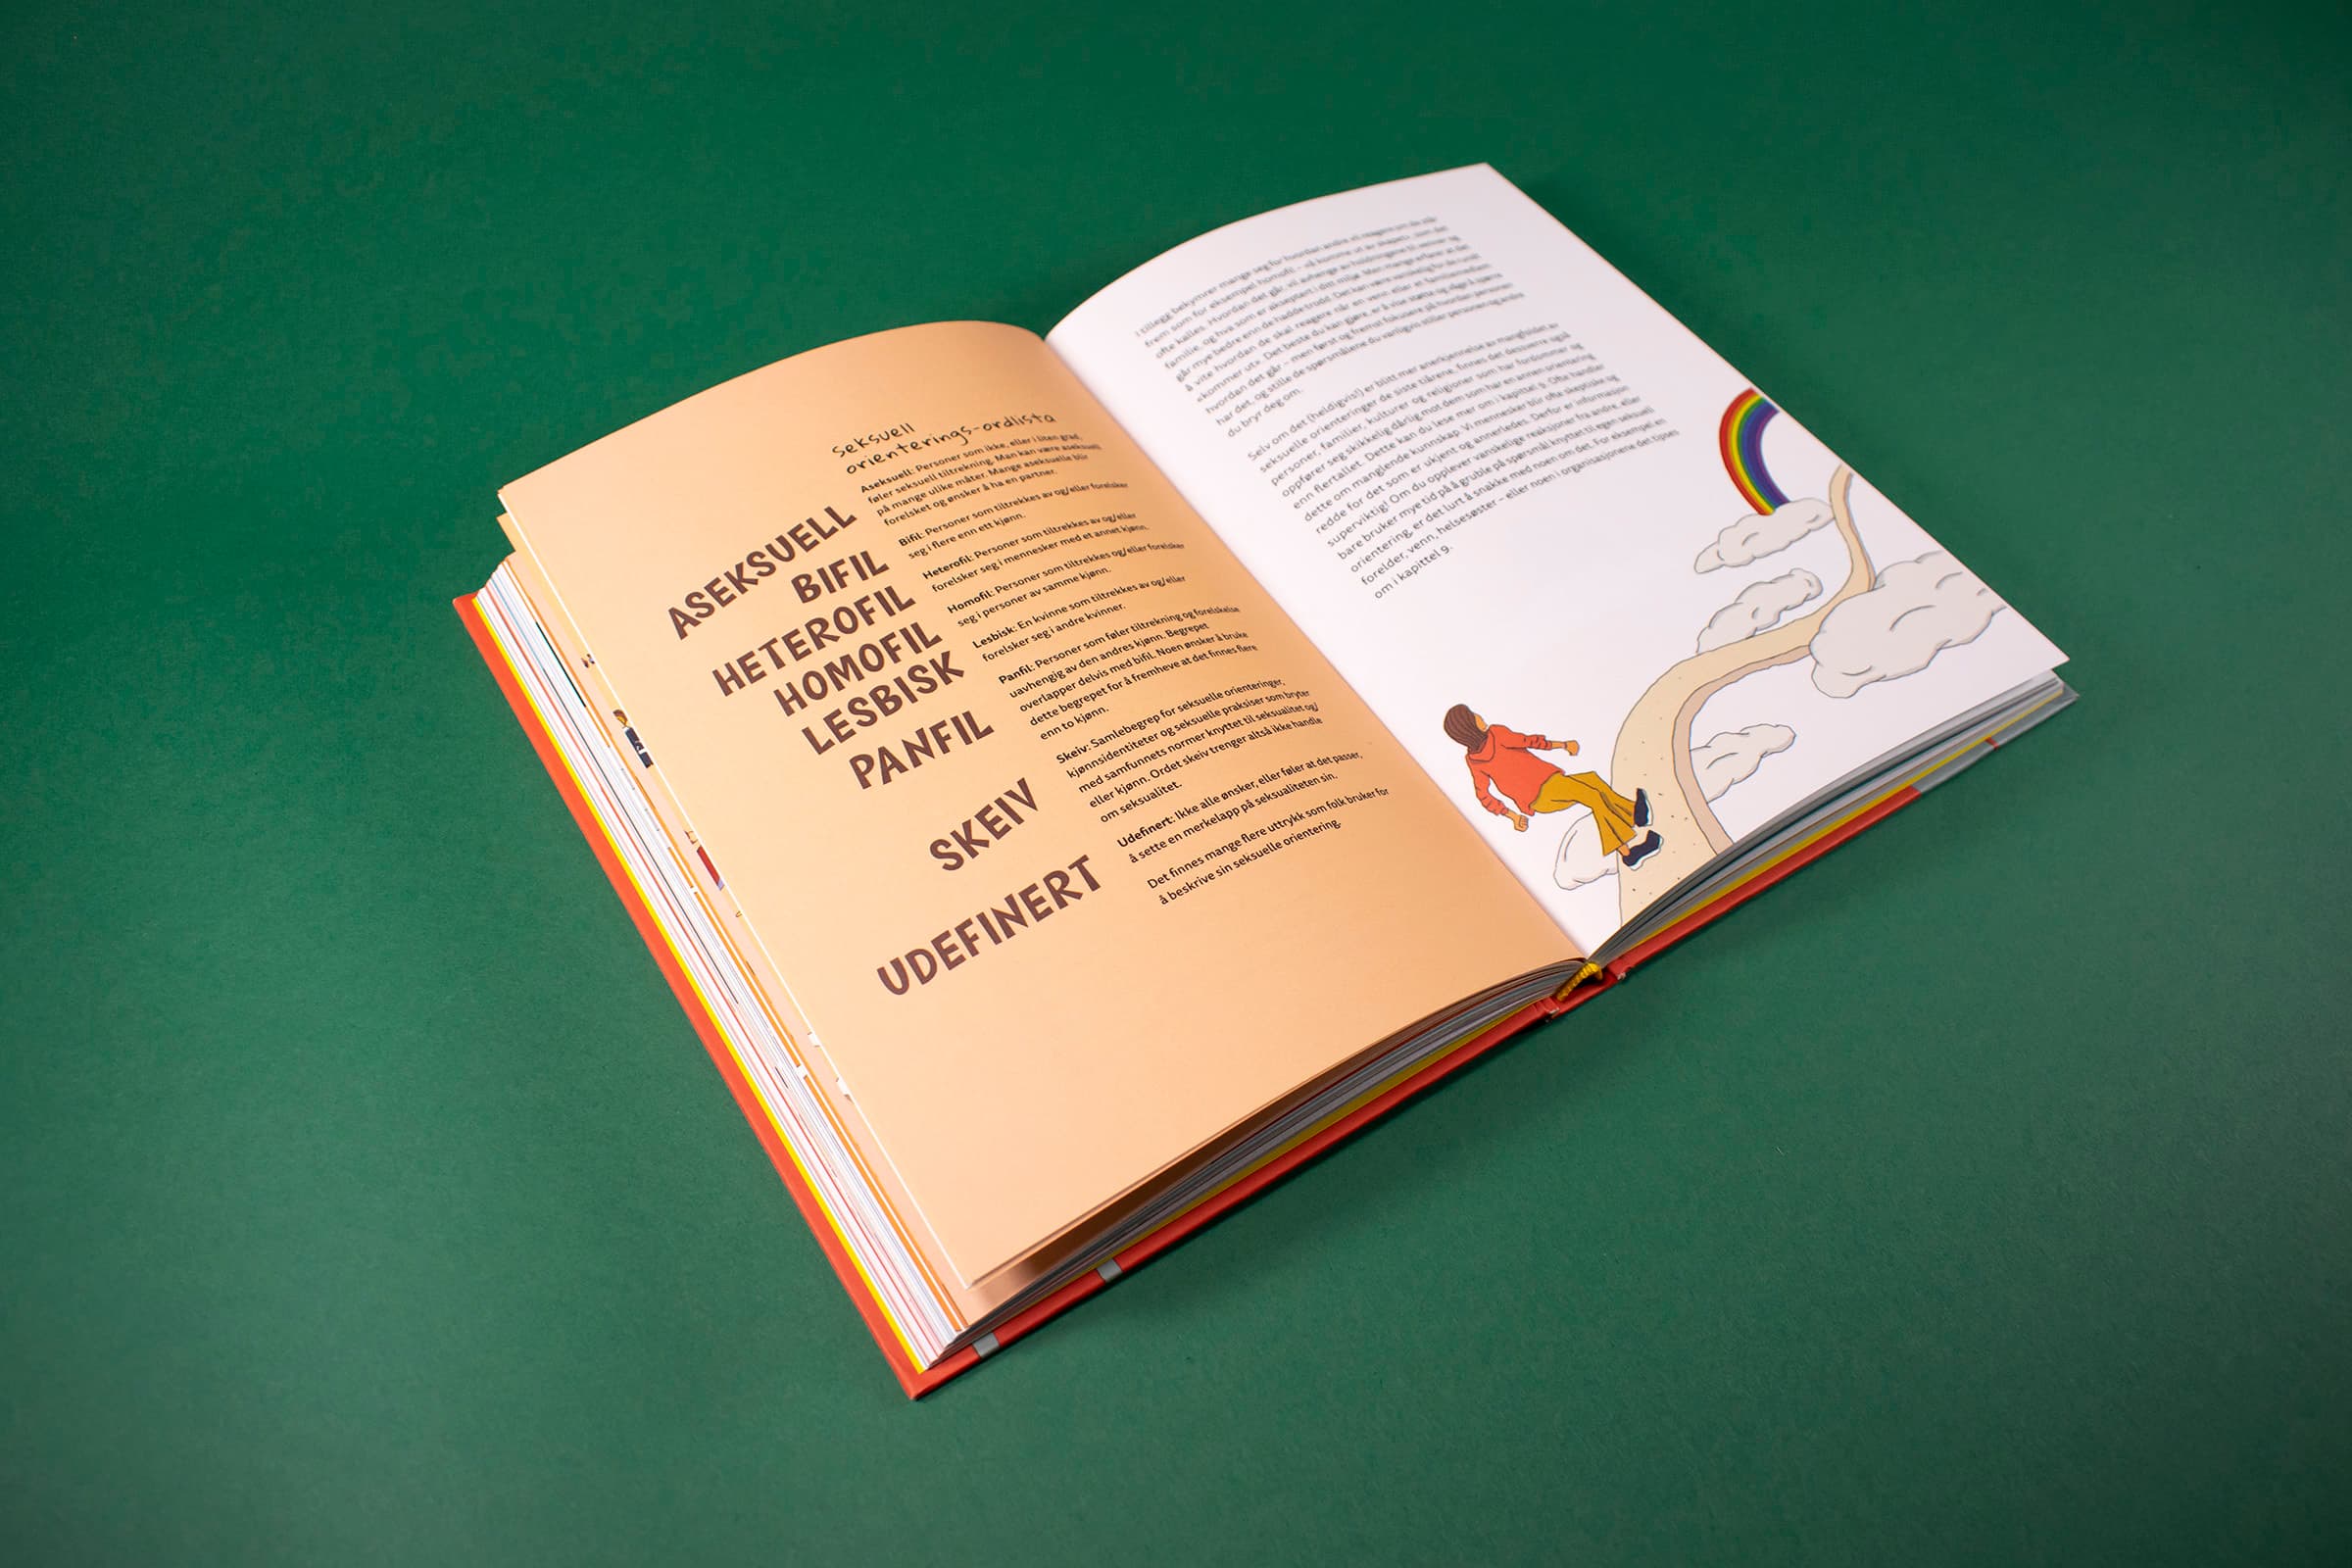 Bildet viser et oppslag i boken som handler om seksualitet og legning. På venstre side er det en liste over ulike legninger man kan ha, og på høyre side er det illustrert en person som går på en regnbue.